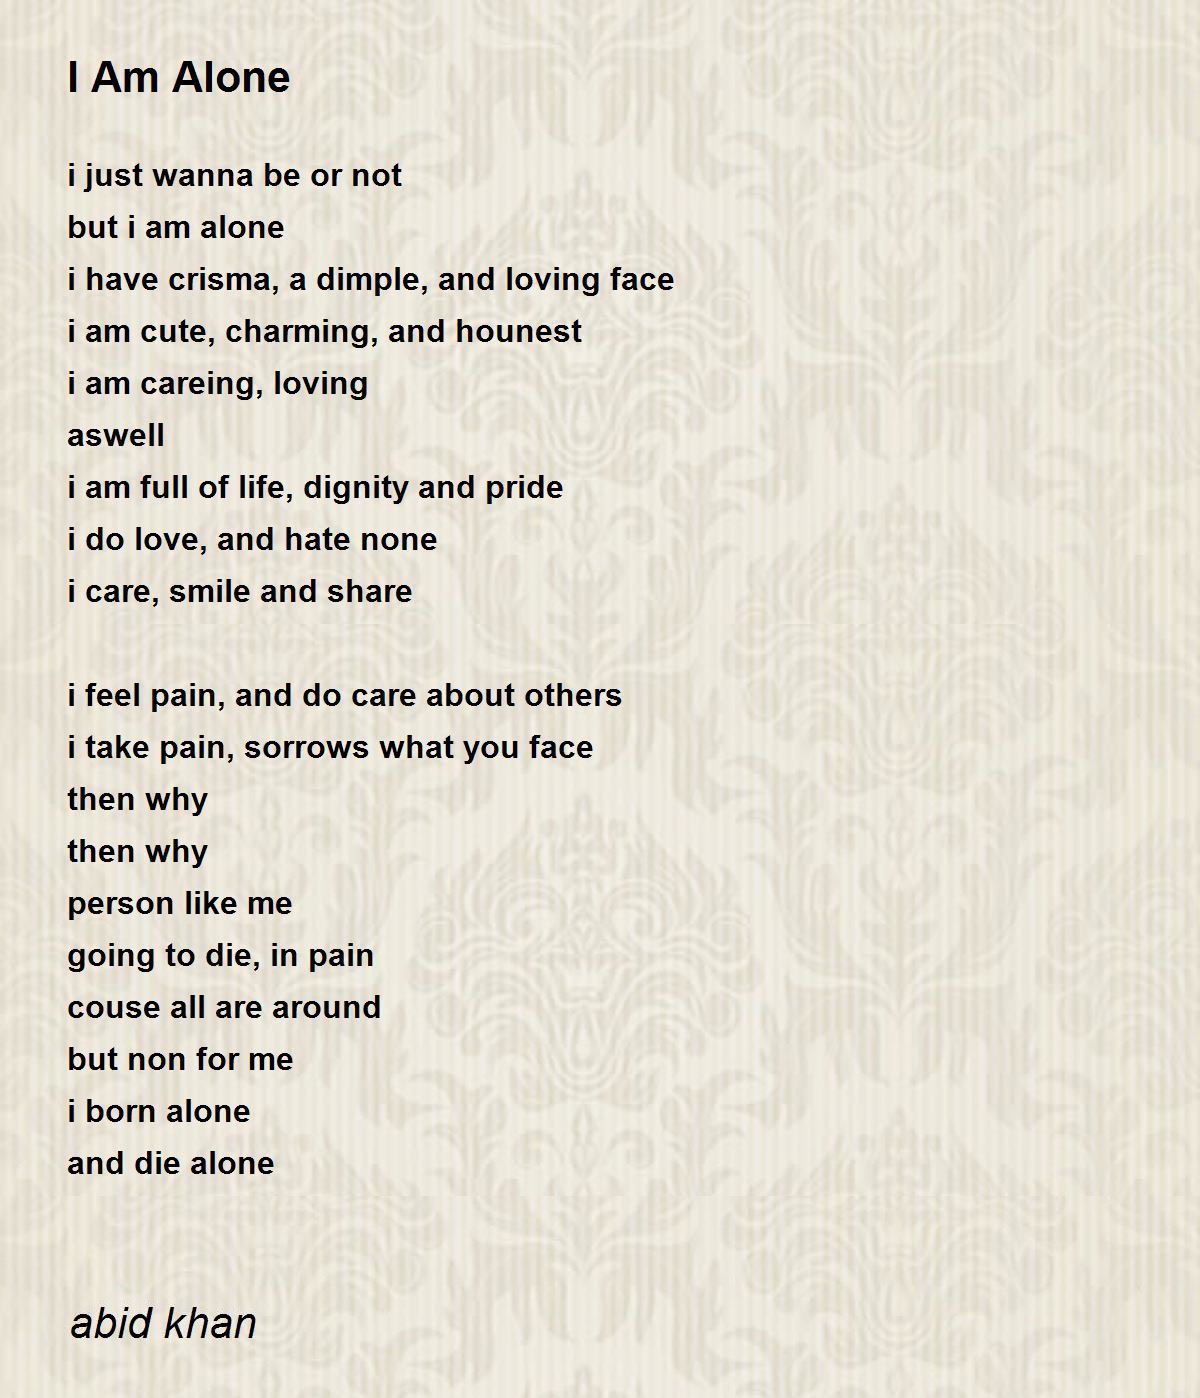 I Am Alone - I Am Alone Poem by abid khan